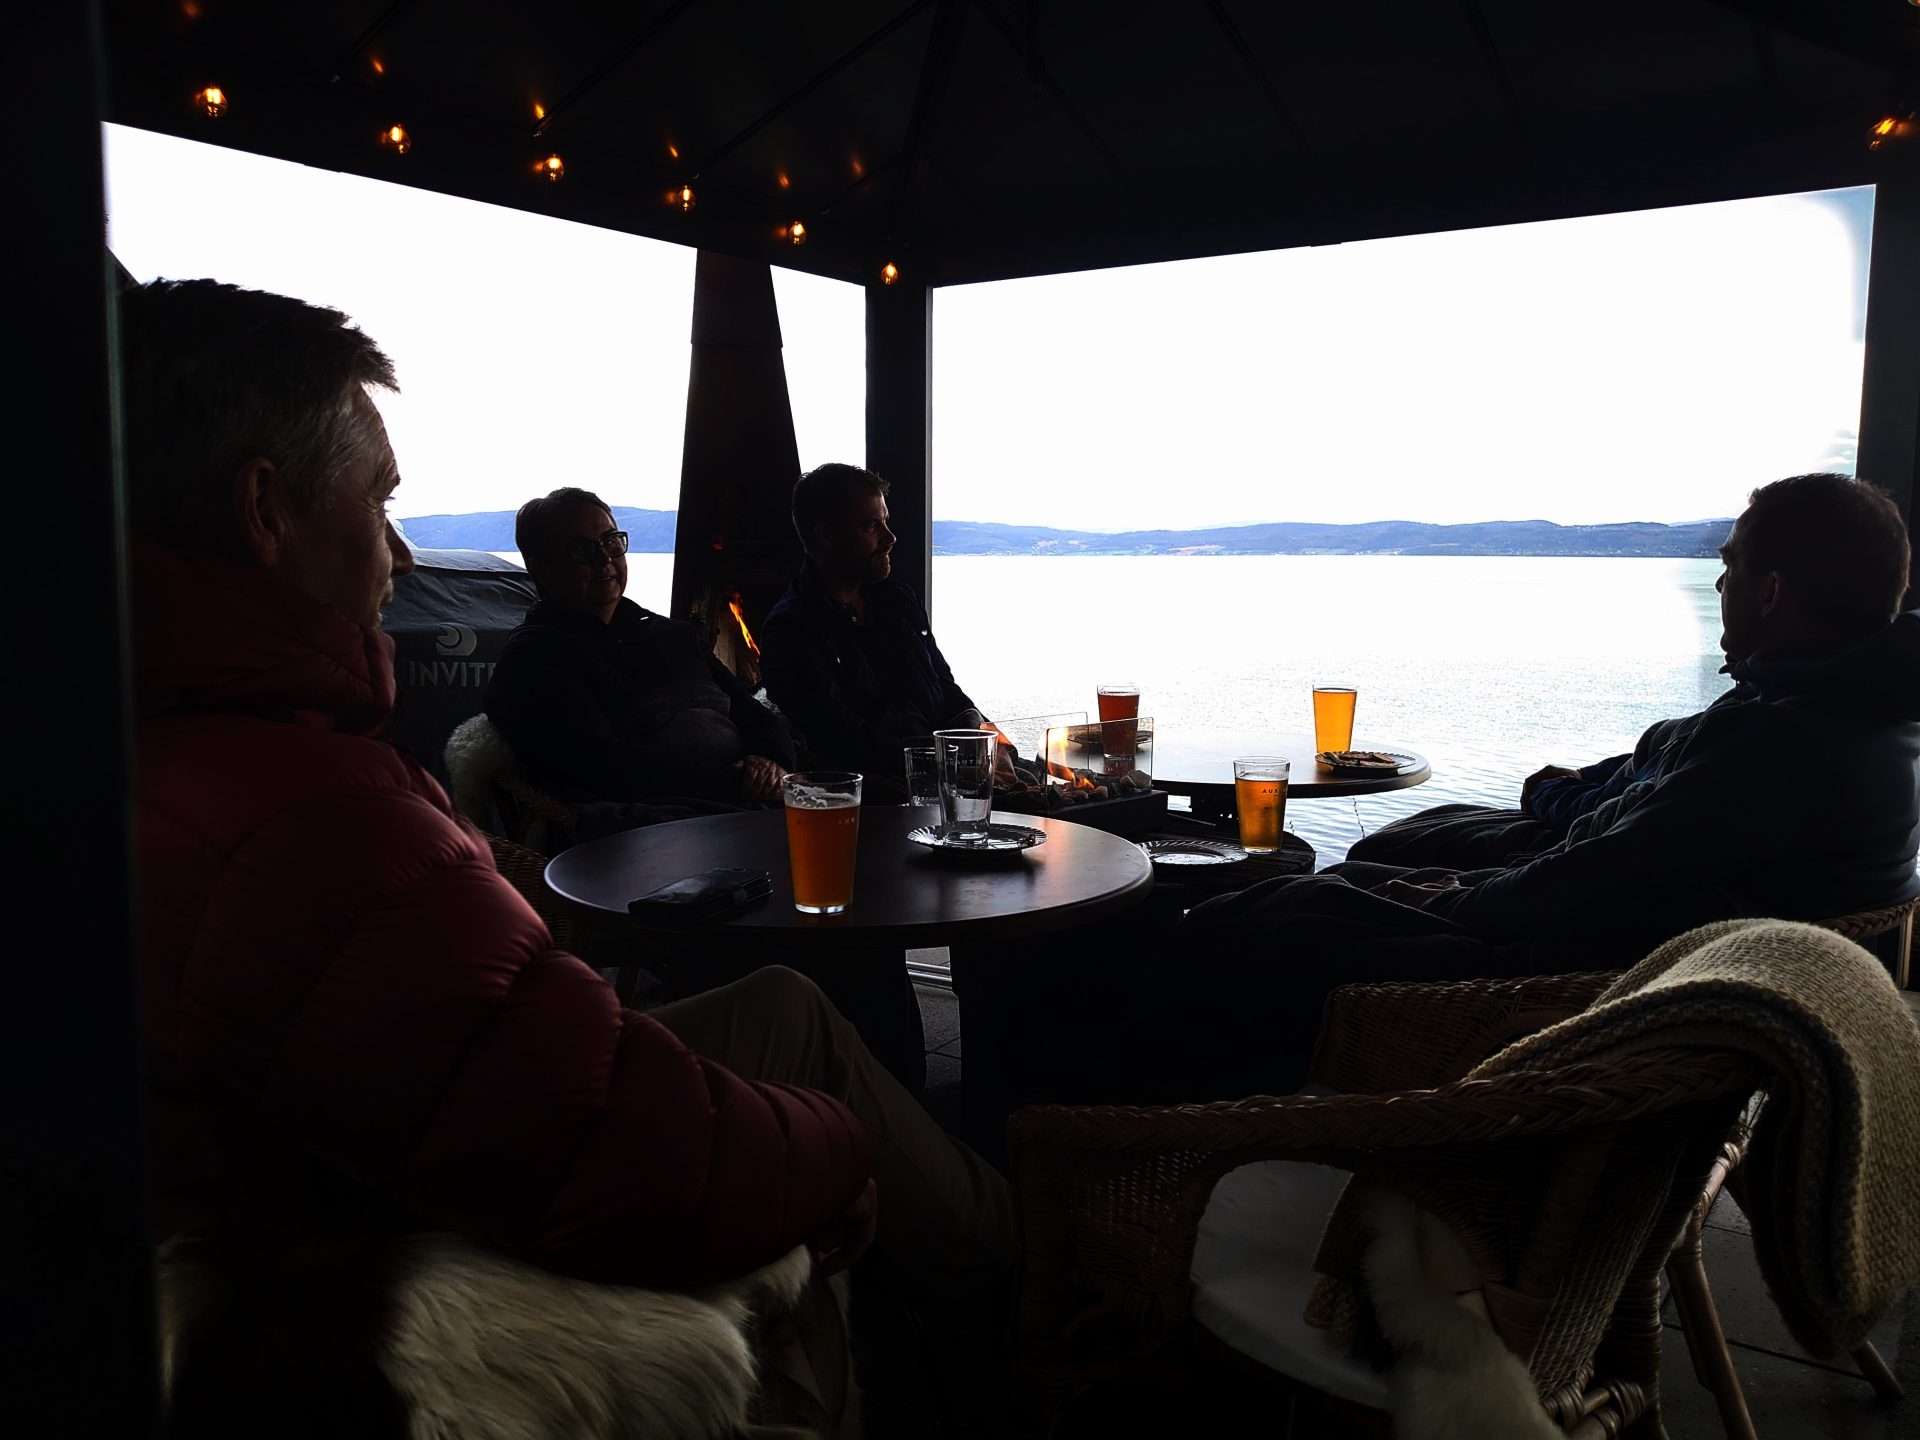 Nach einem langen und anstrengenden Arbeitstag ist es keine schlechte Art, ein gutes Getränk im Freien zu genießen, mit einem Feuer im Kamin und einem Blick auf den Fjord.